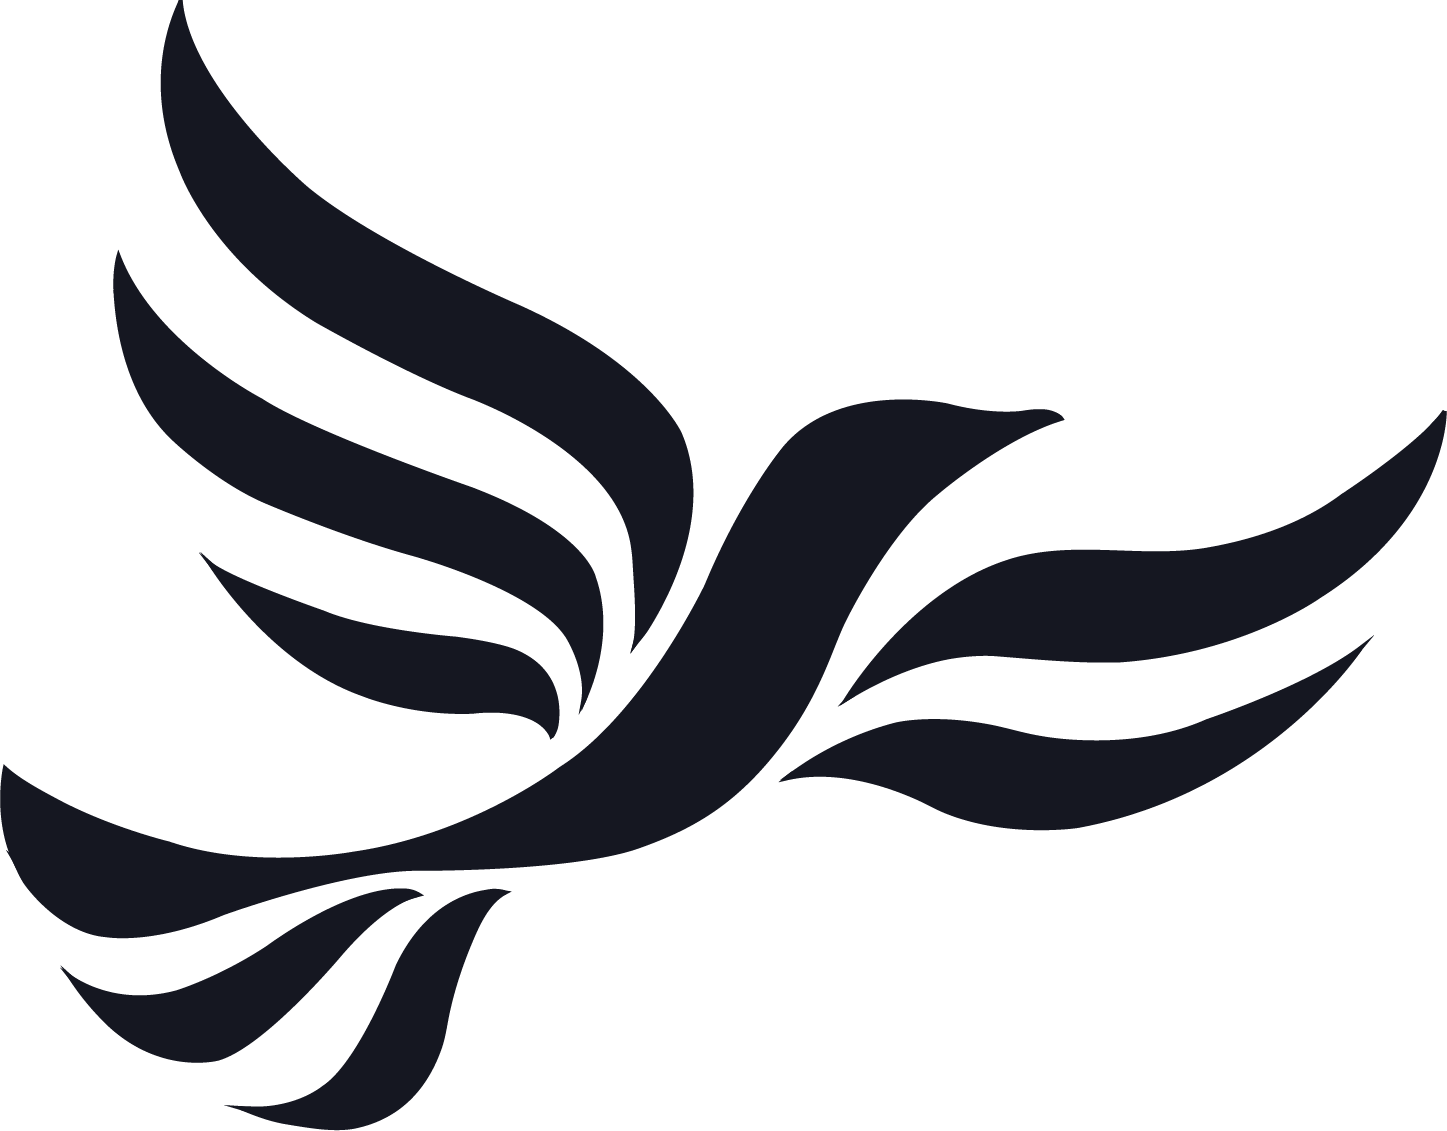 Liberal Democrats Party logo